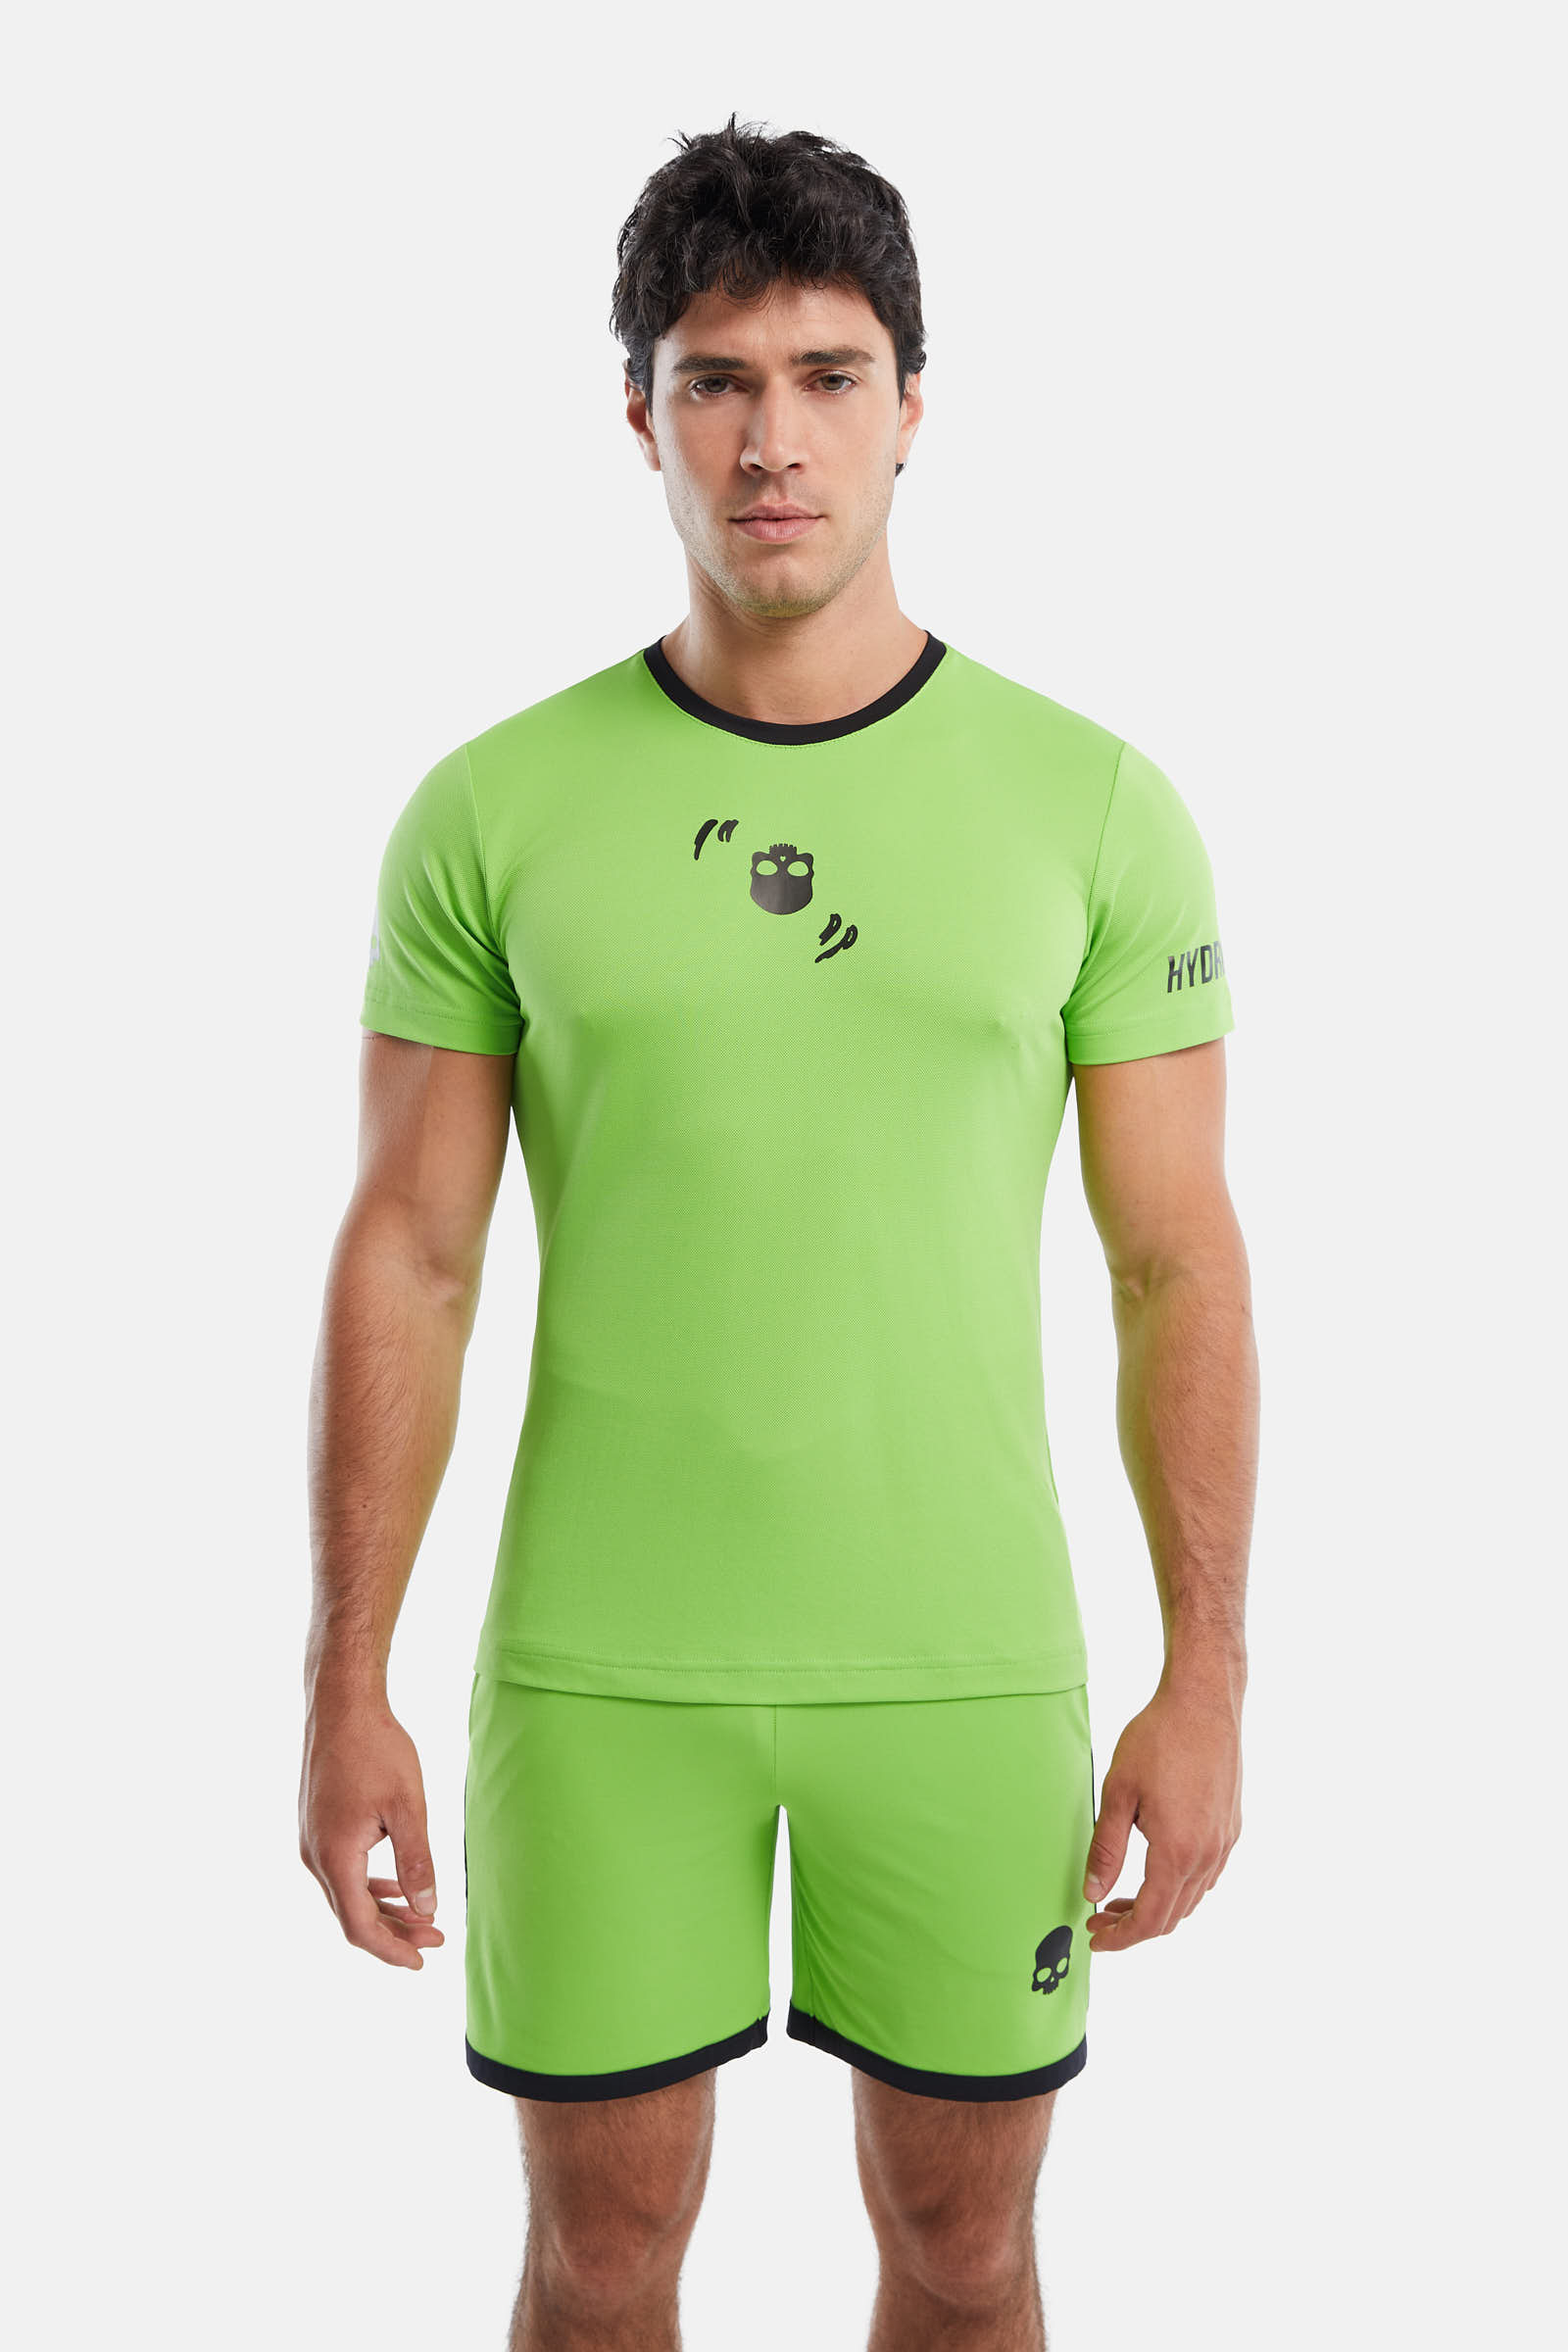 CRAZY RACKET TECH T-SHIRT - GREEN - Hydrogen - Luxury Sportwear